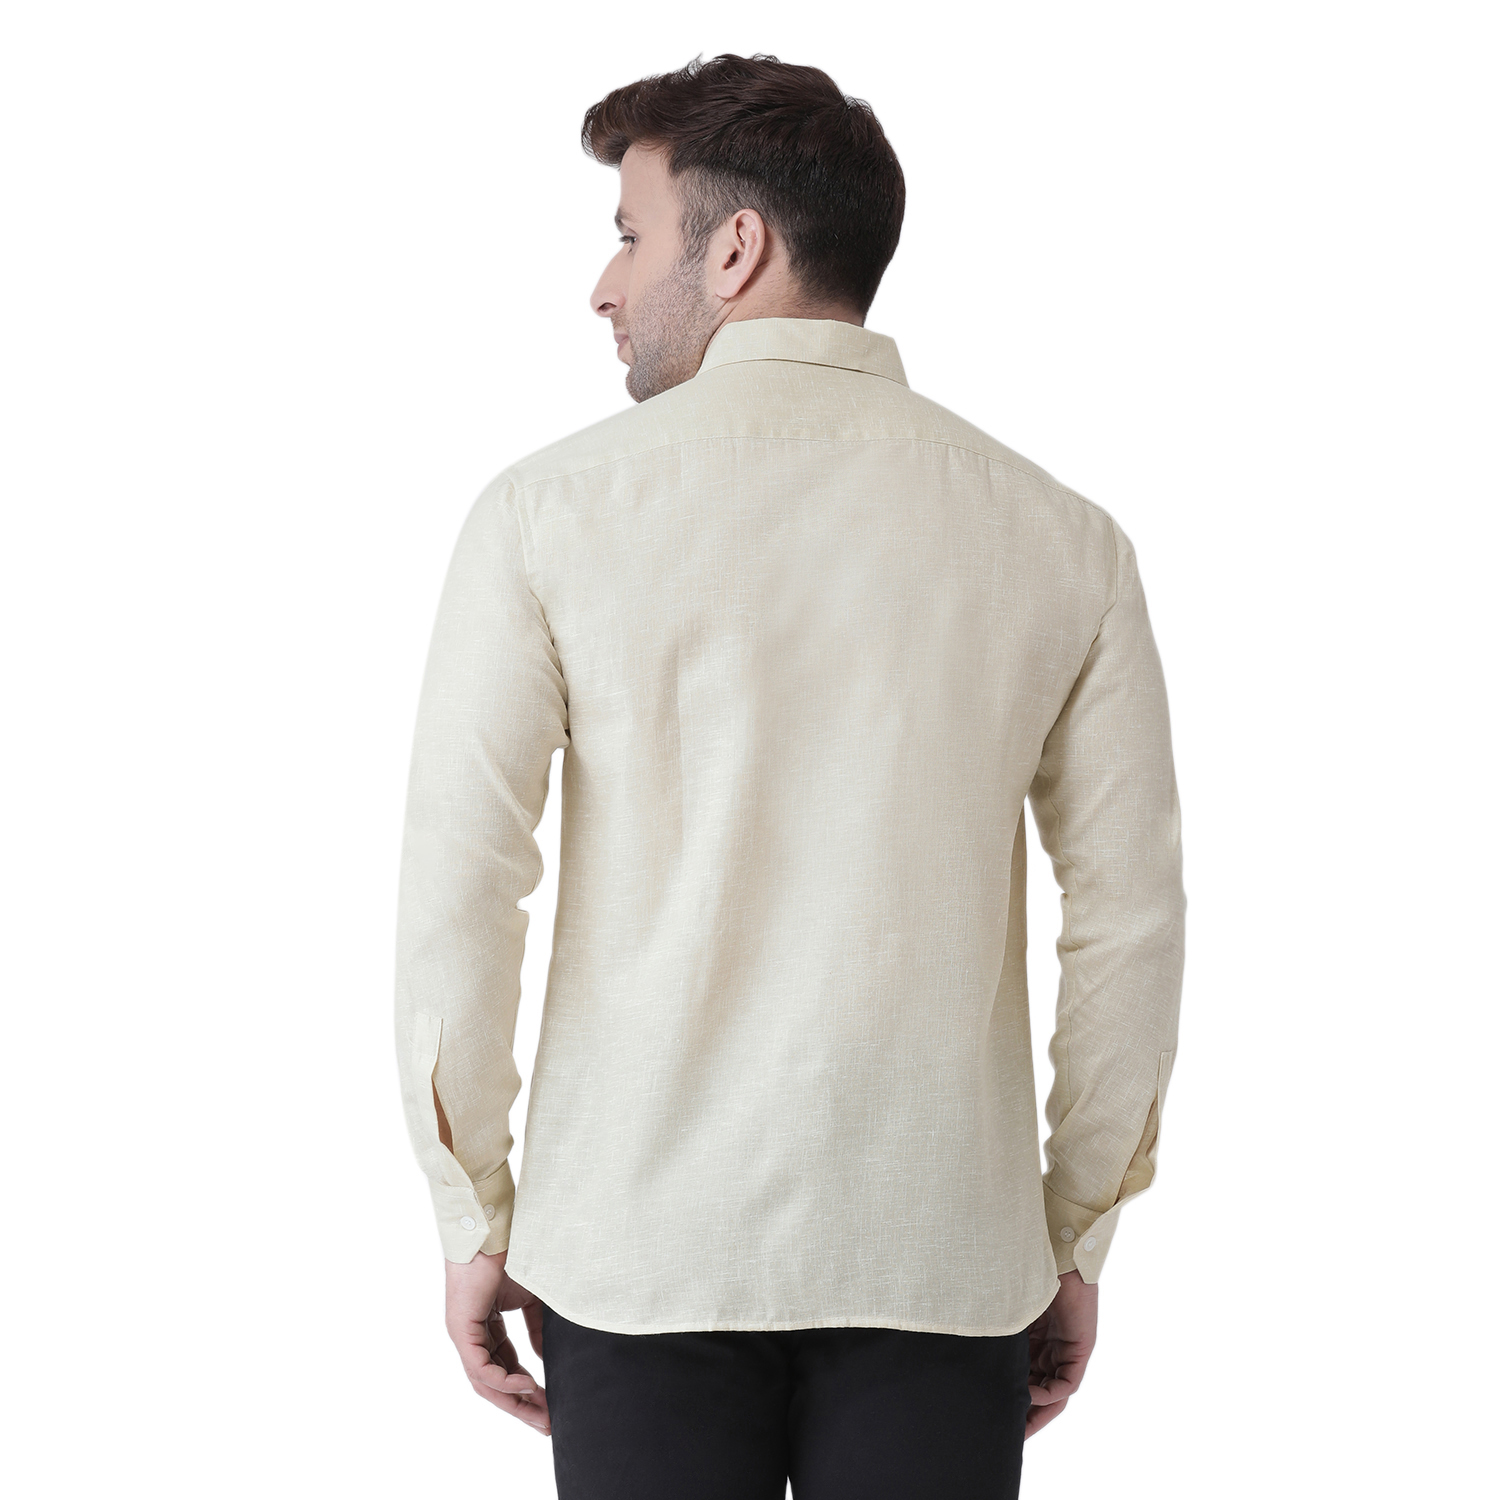 Buy Riag Men's Khaki Linen Full Shirt Online - Get 67% Off